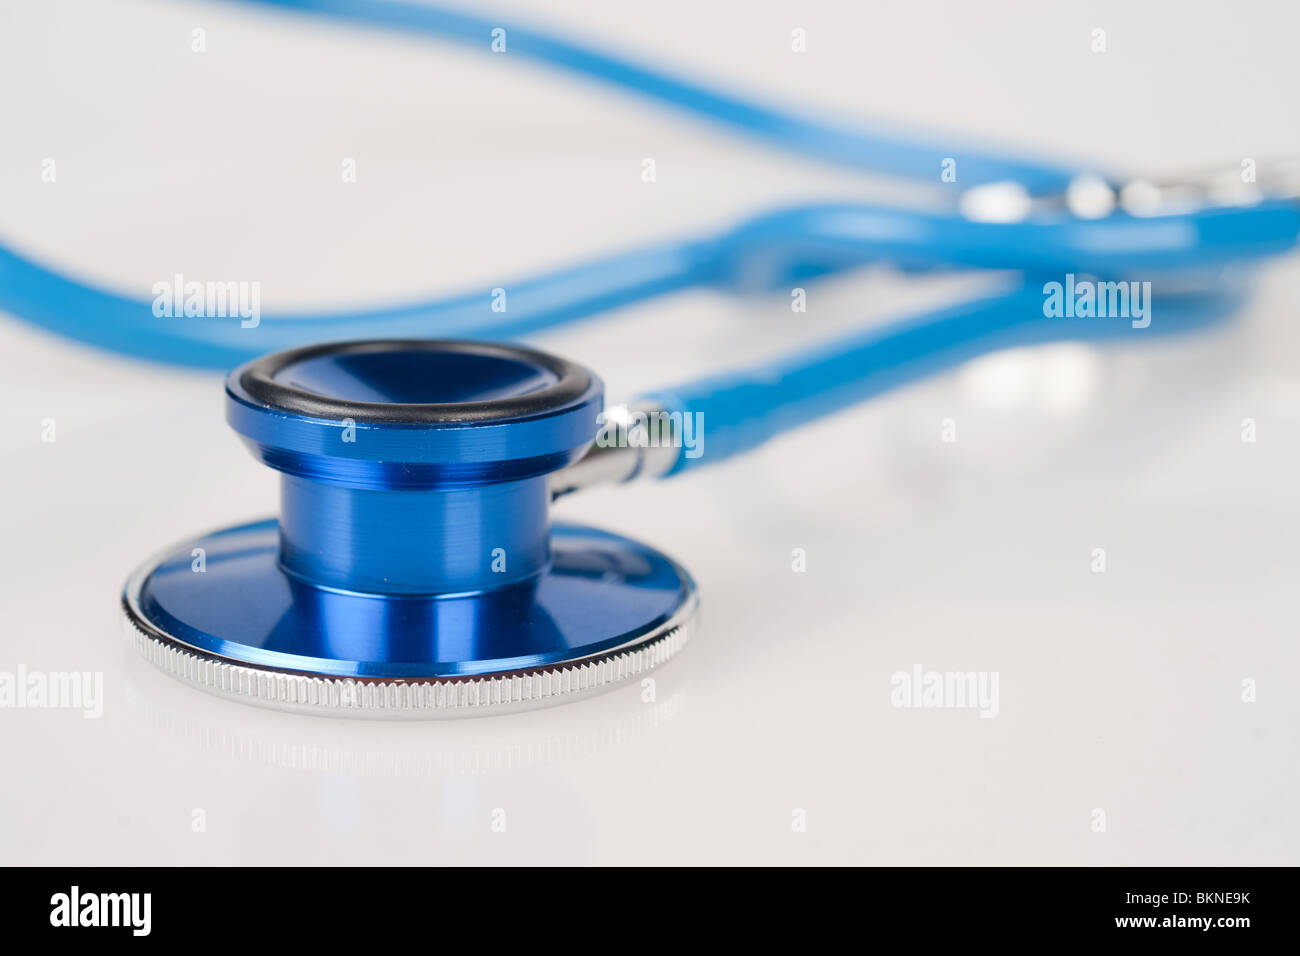 tolles Bild von einem blauen Stethoskop auf weißem Hintergrund Stockfoto